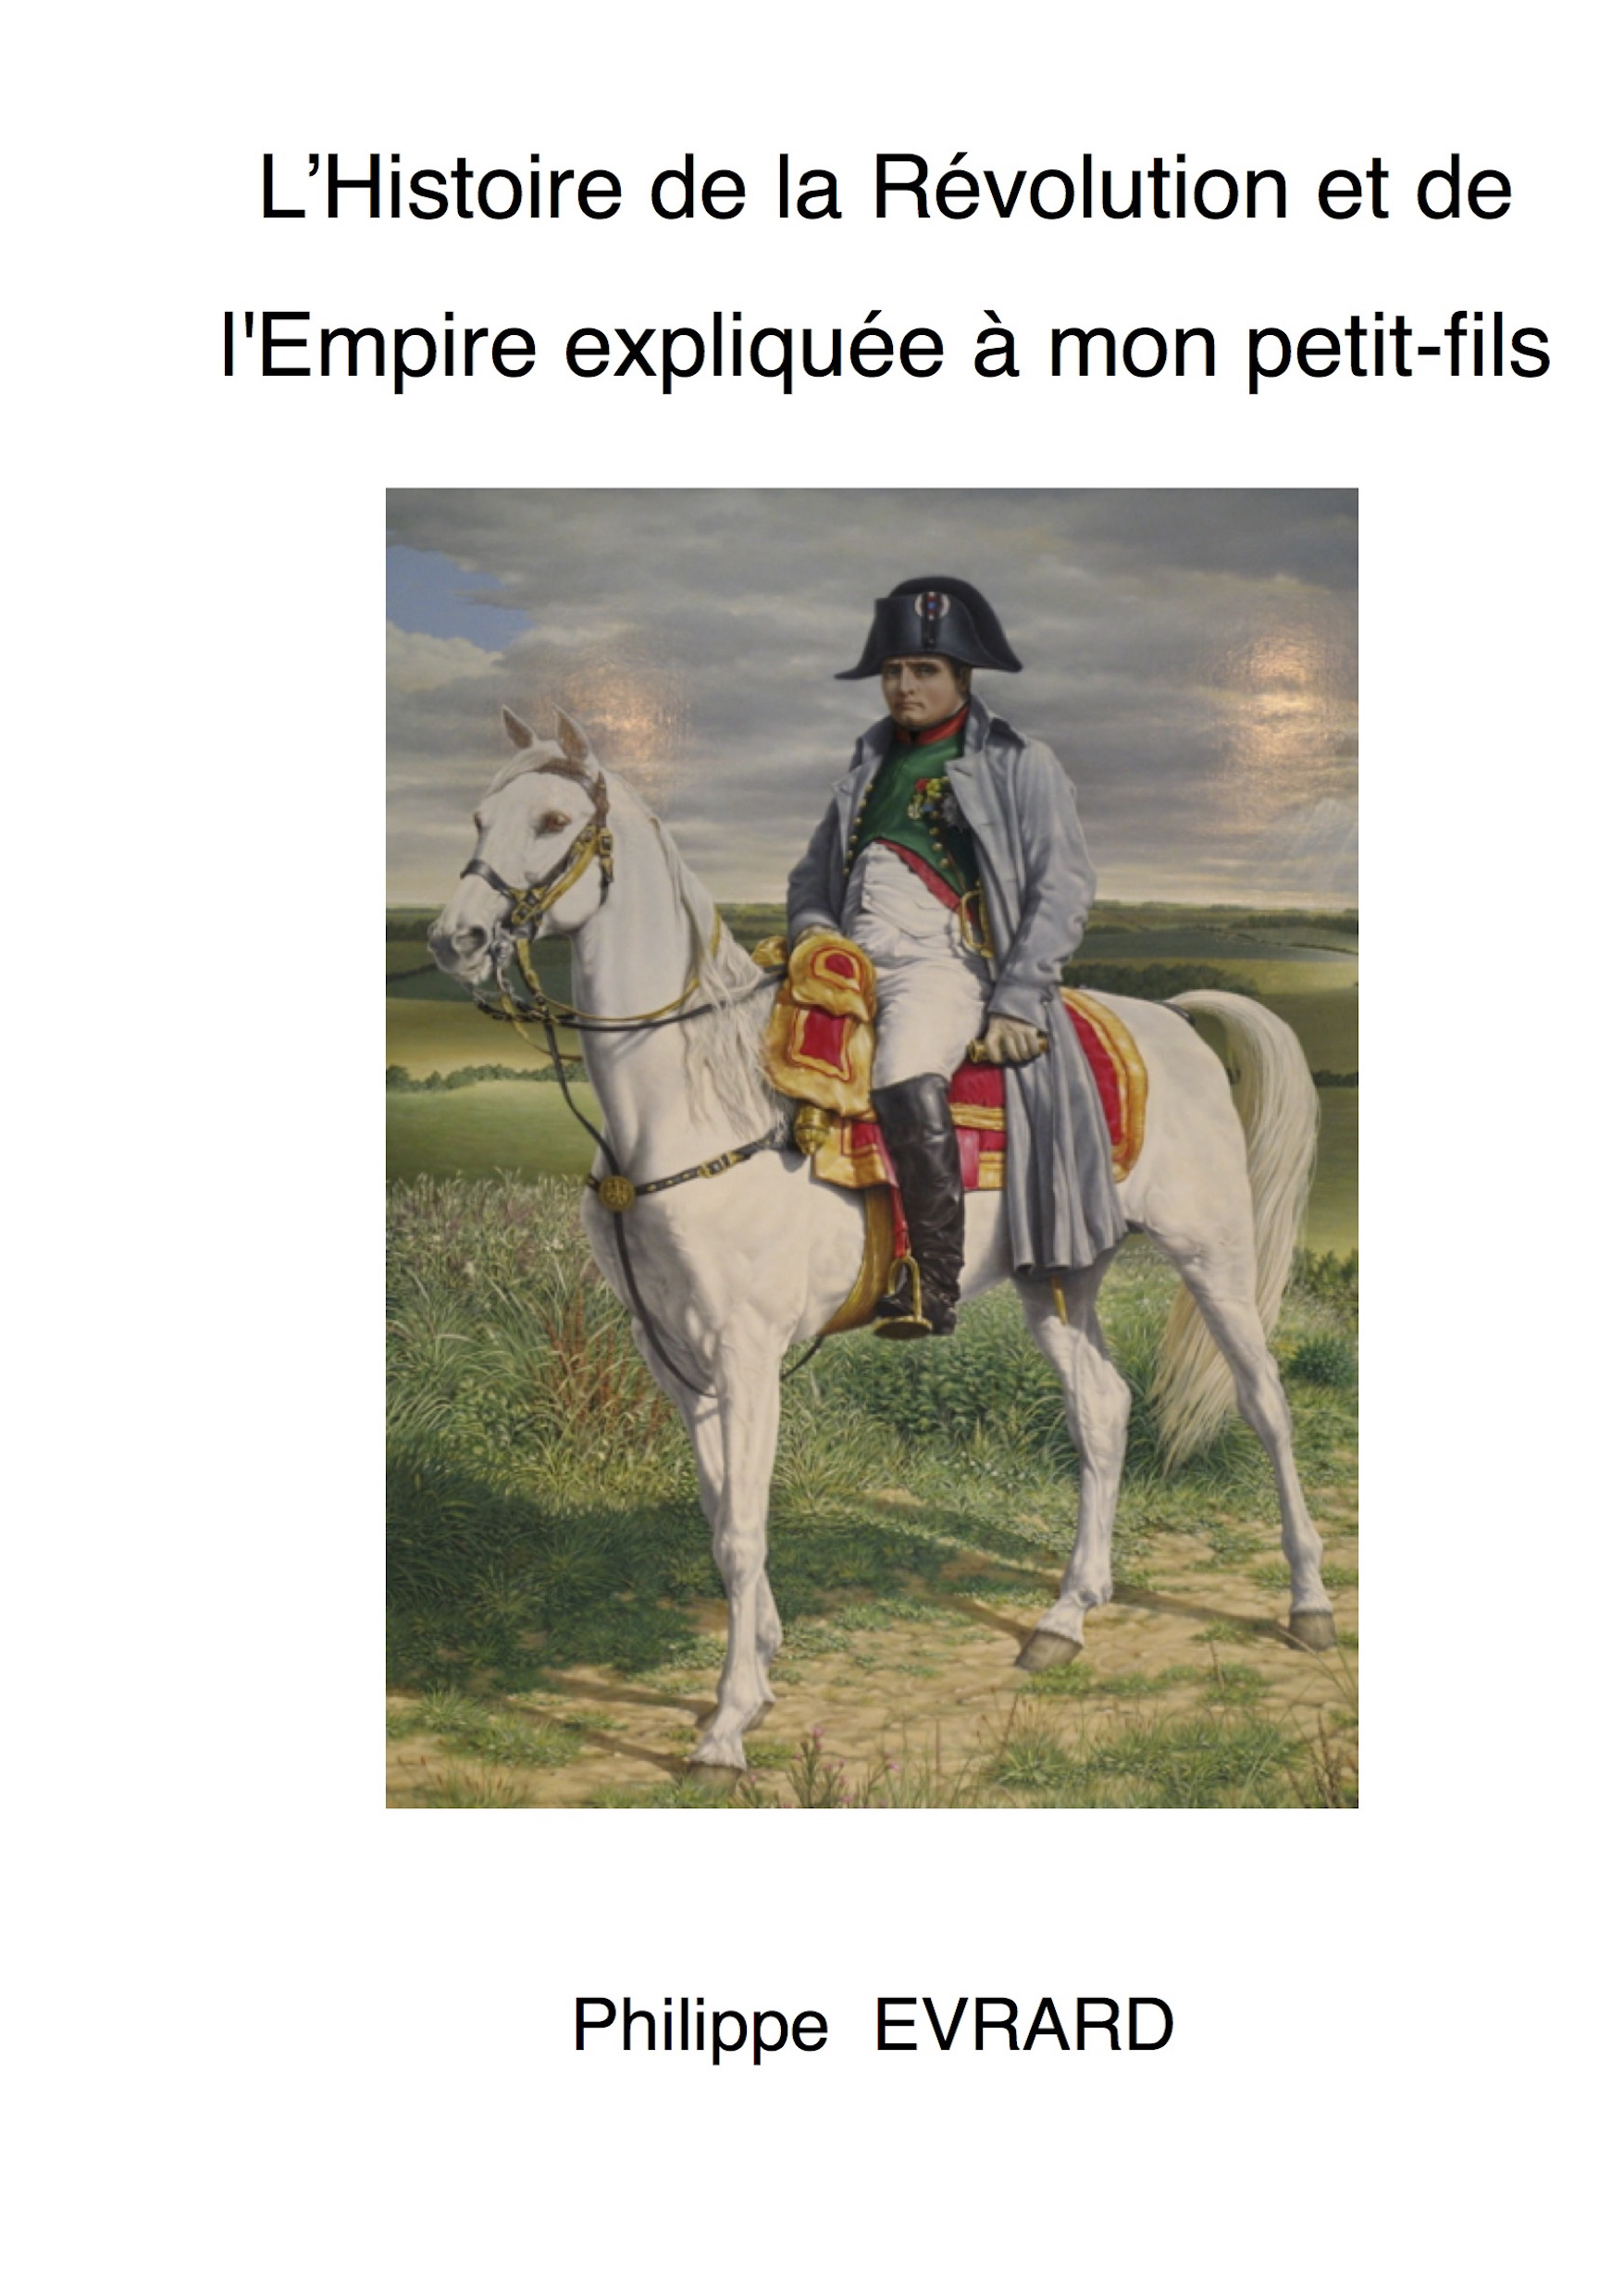 Histoire de la Révolution et de Empire